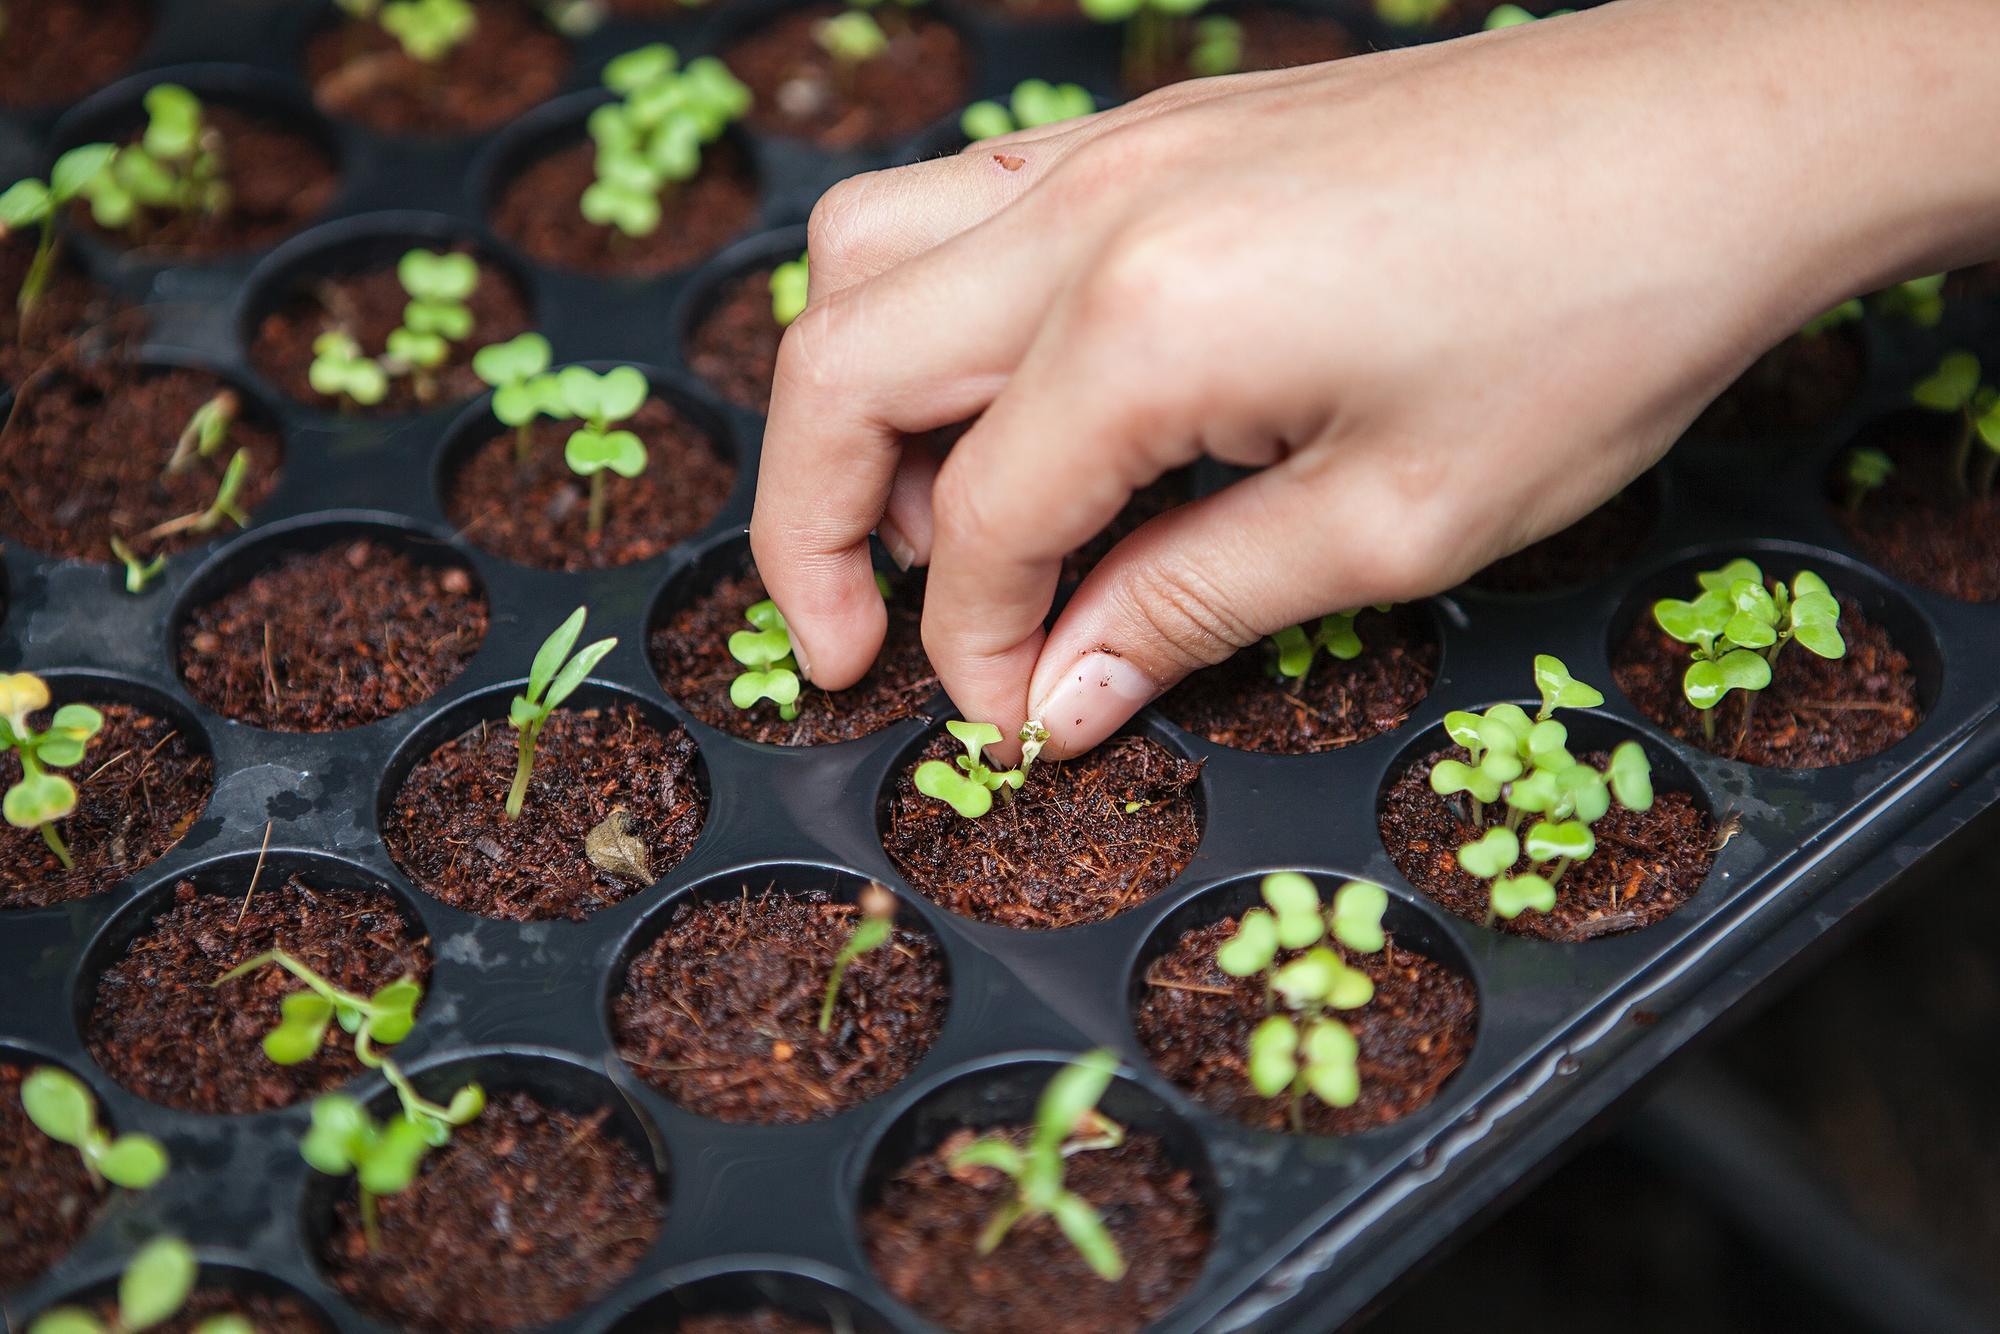 hand tending seedlings in plastic seed tray